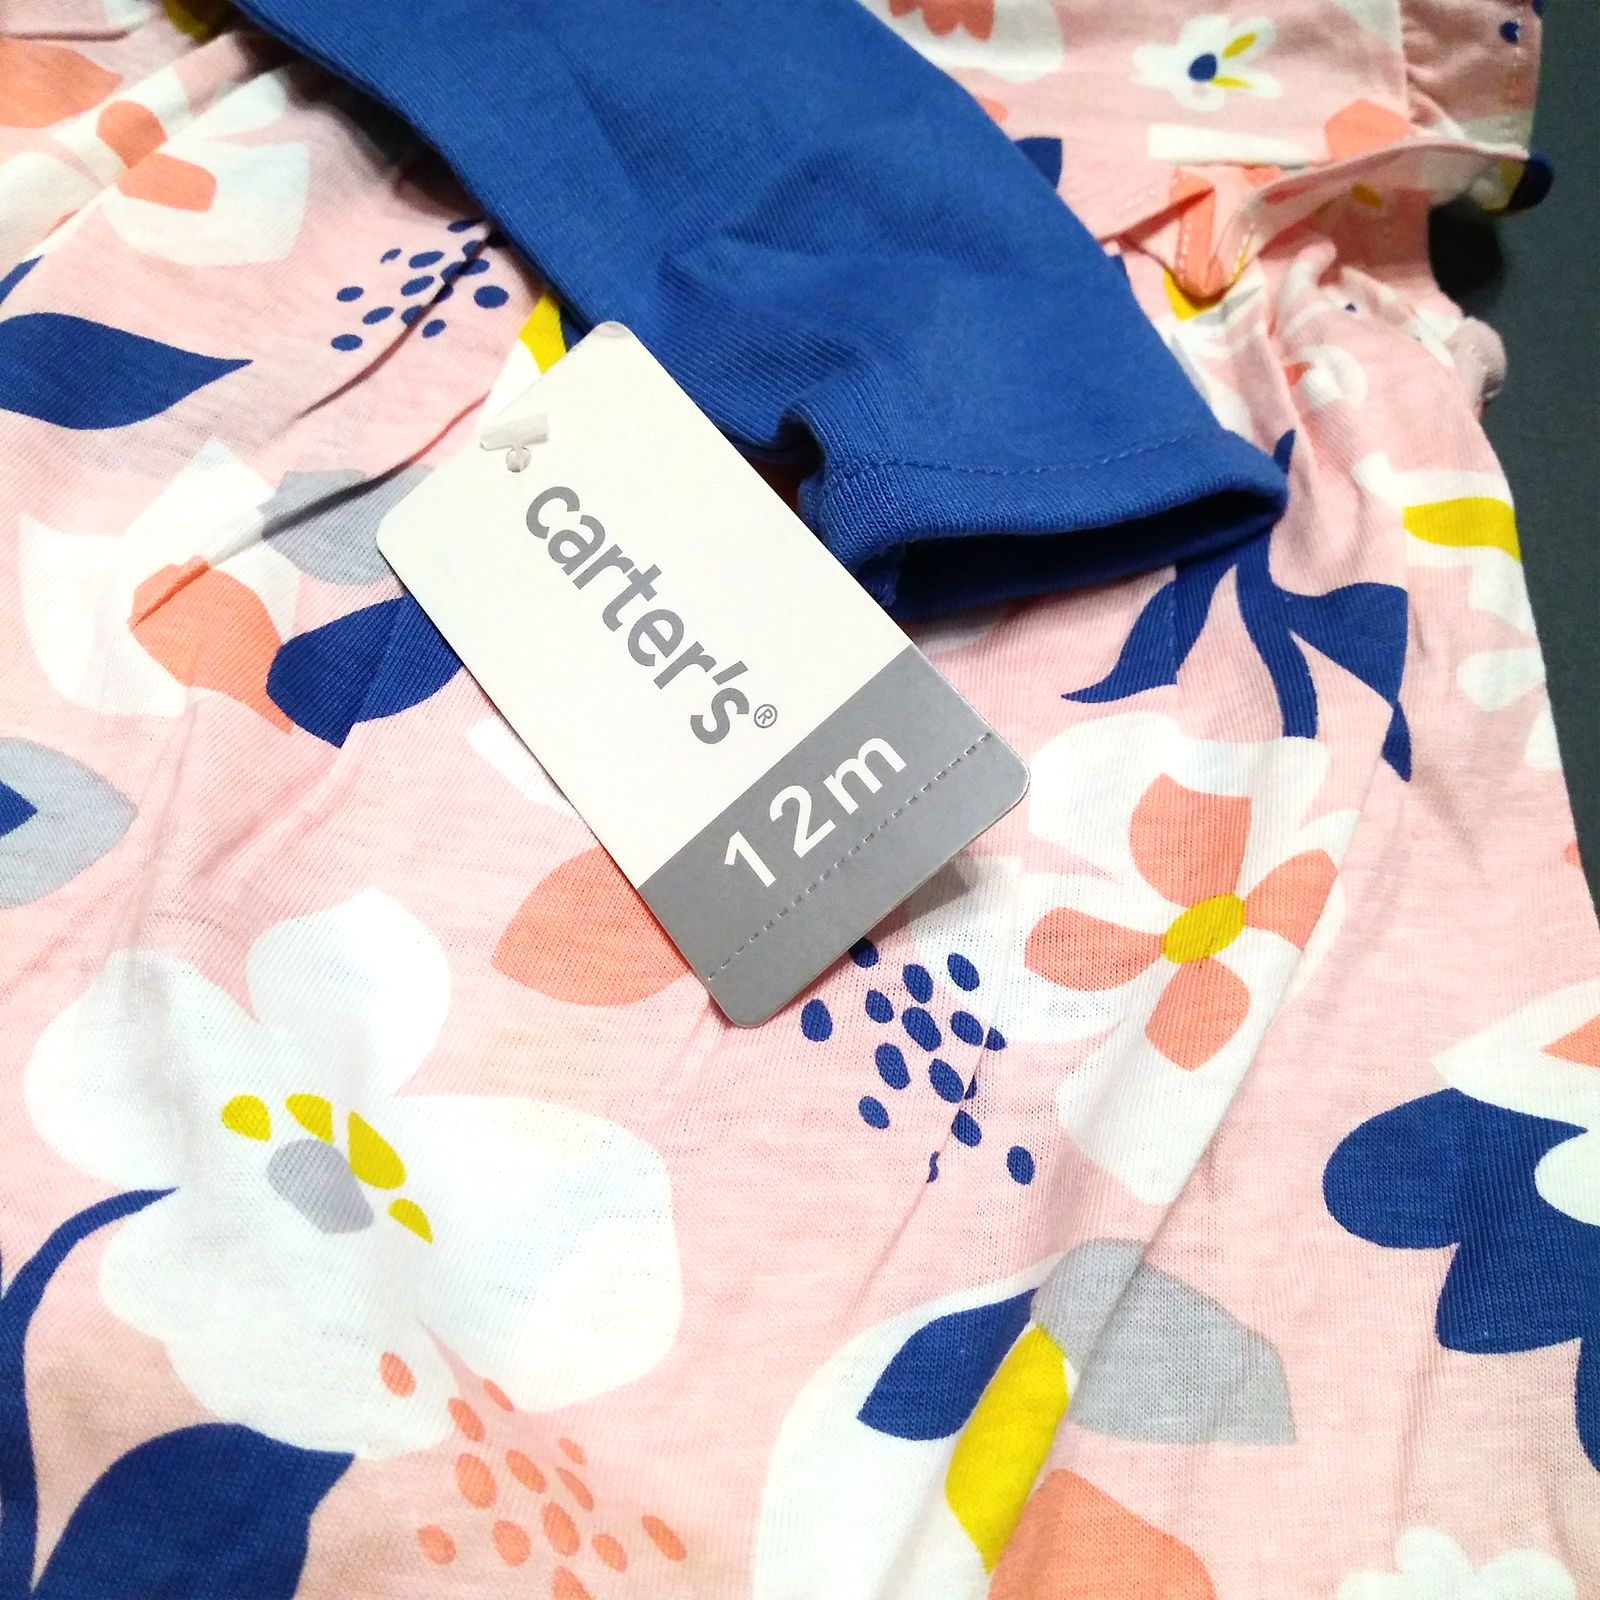 ست کت و پیراهن نوزادی دخترانه کارترز طرح Floral کد M615 -  - 4